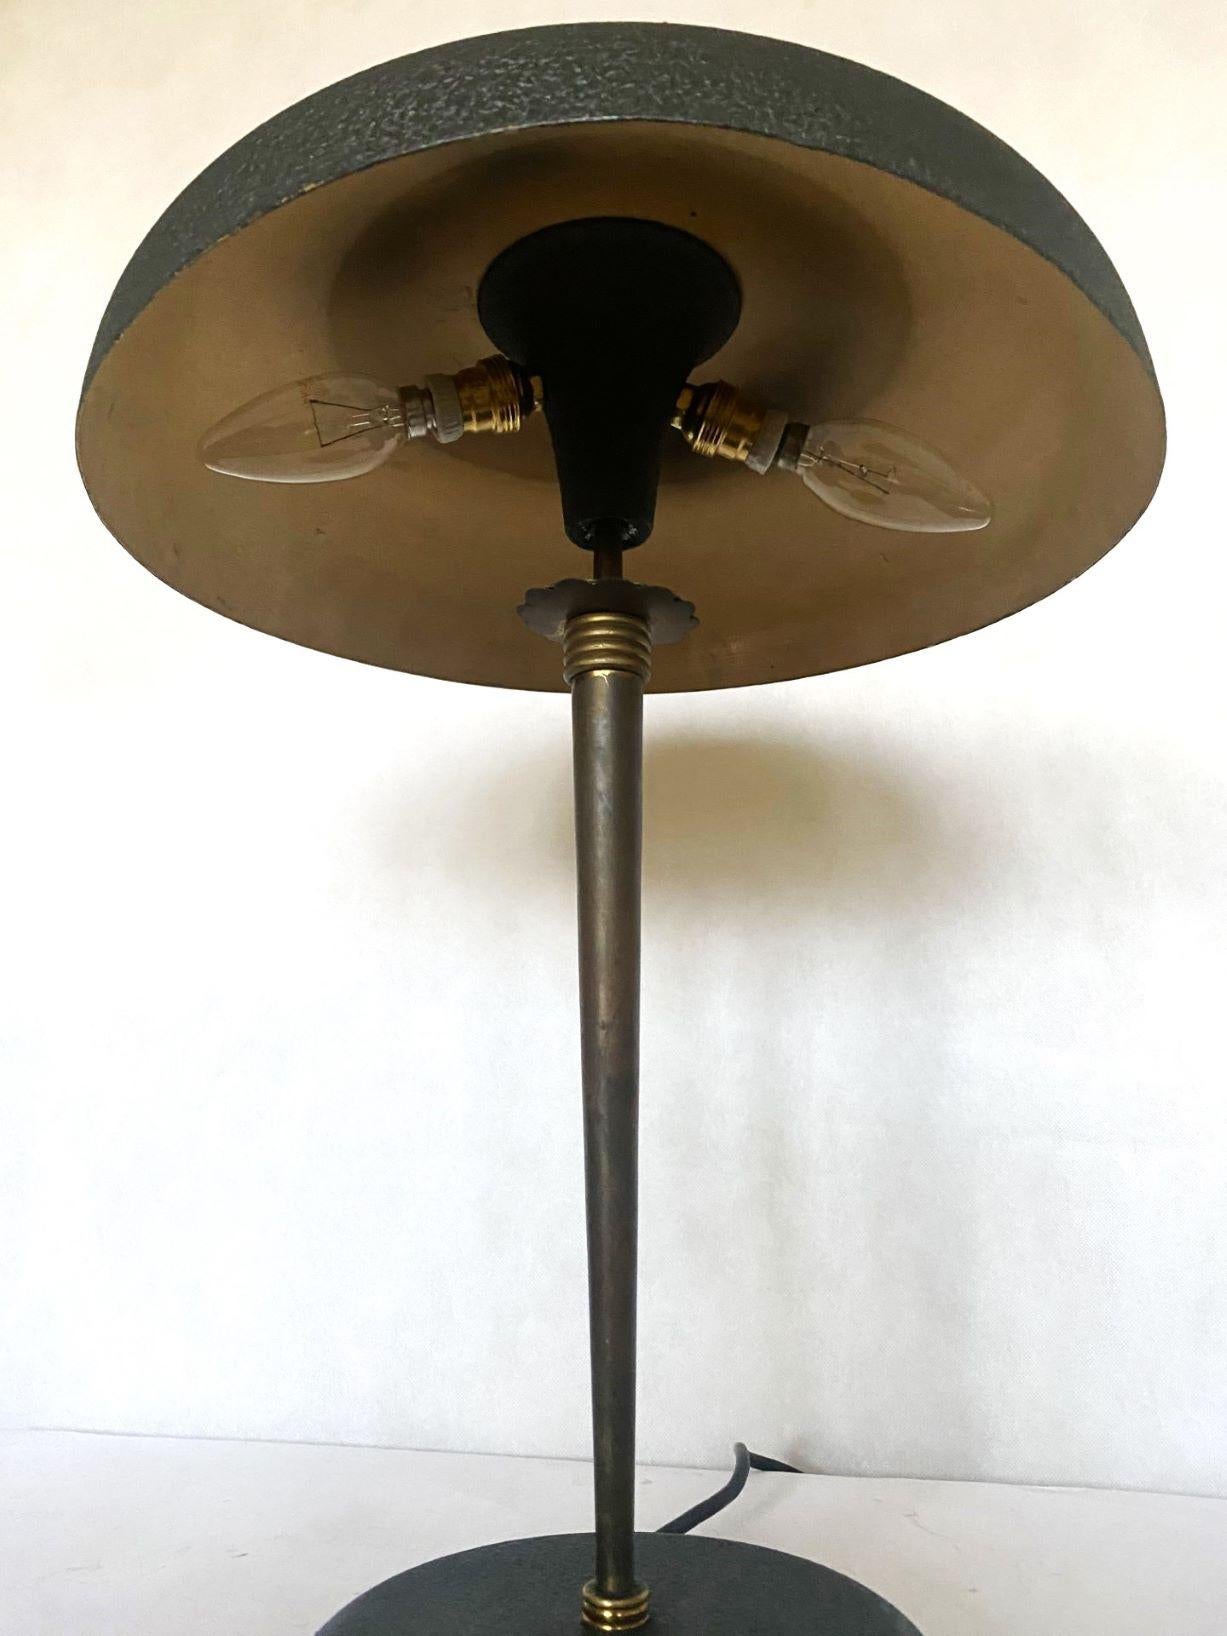 Midcentury Stilnovo Desk or Table Lamp Brass Black Enameled Metal, Iataly, 1950s For Sale 1